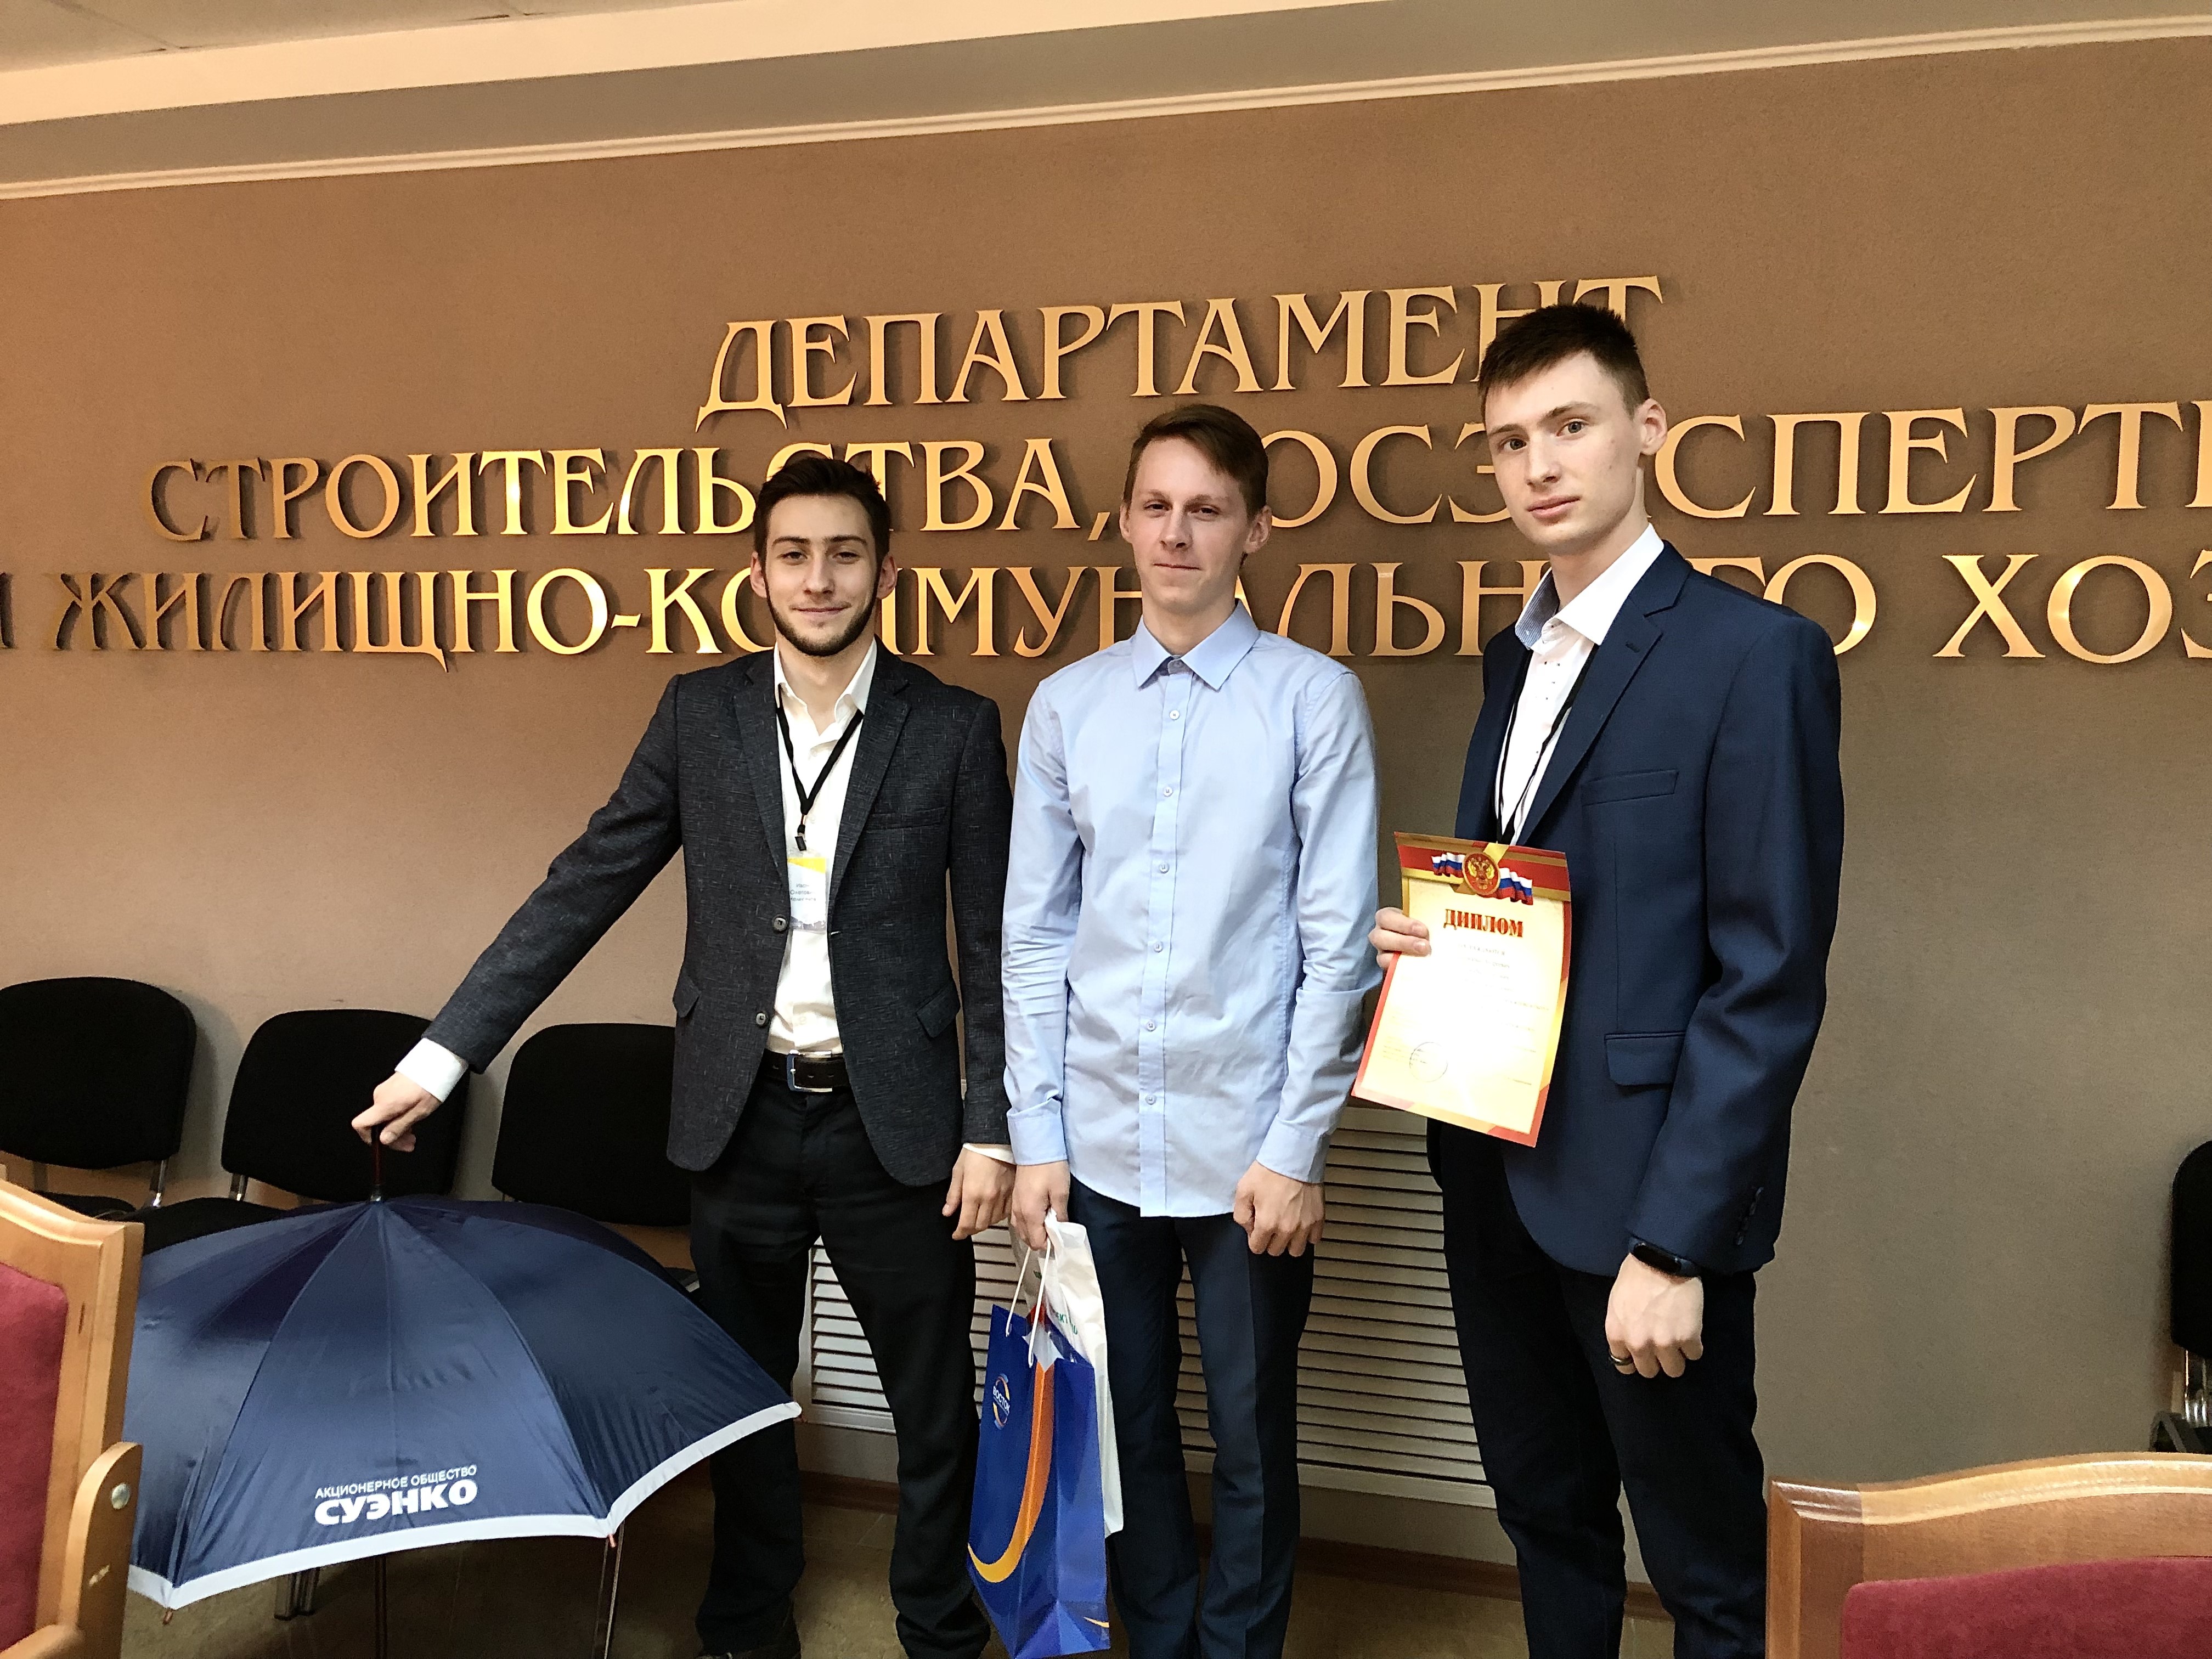 Жюри областного конкурса по энергетике высоко оценило проект студентов КГУ 